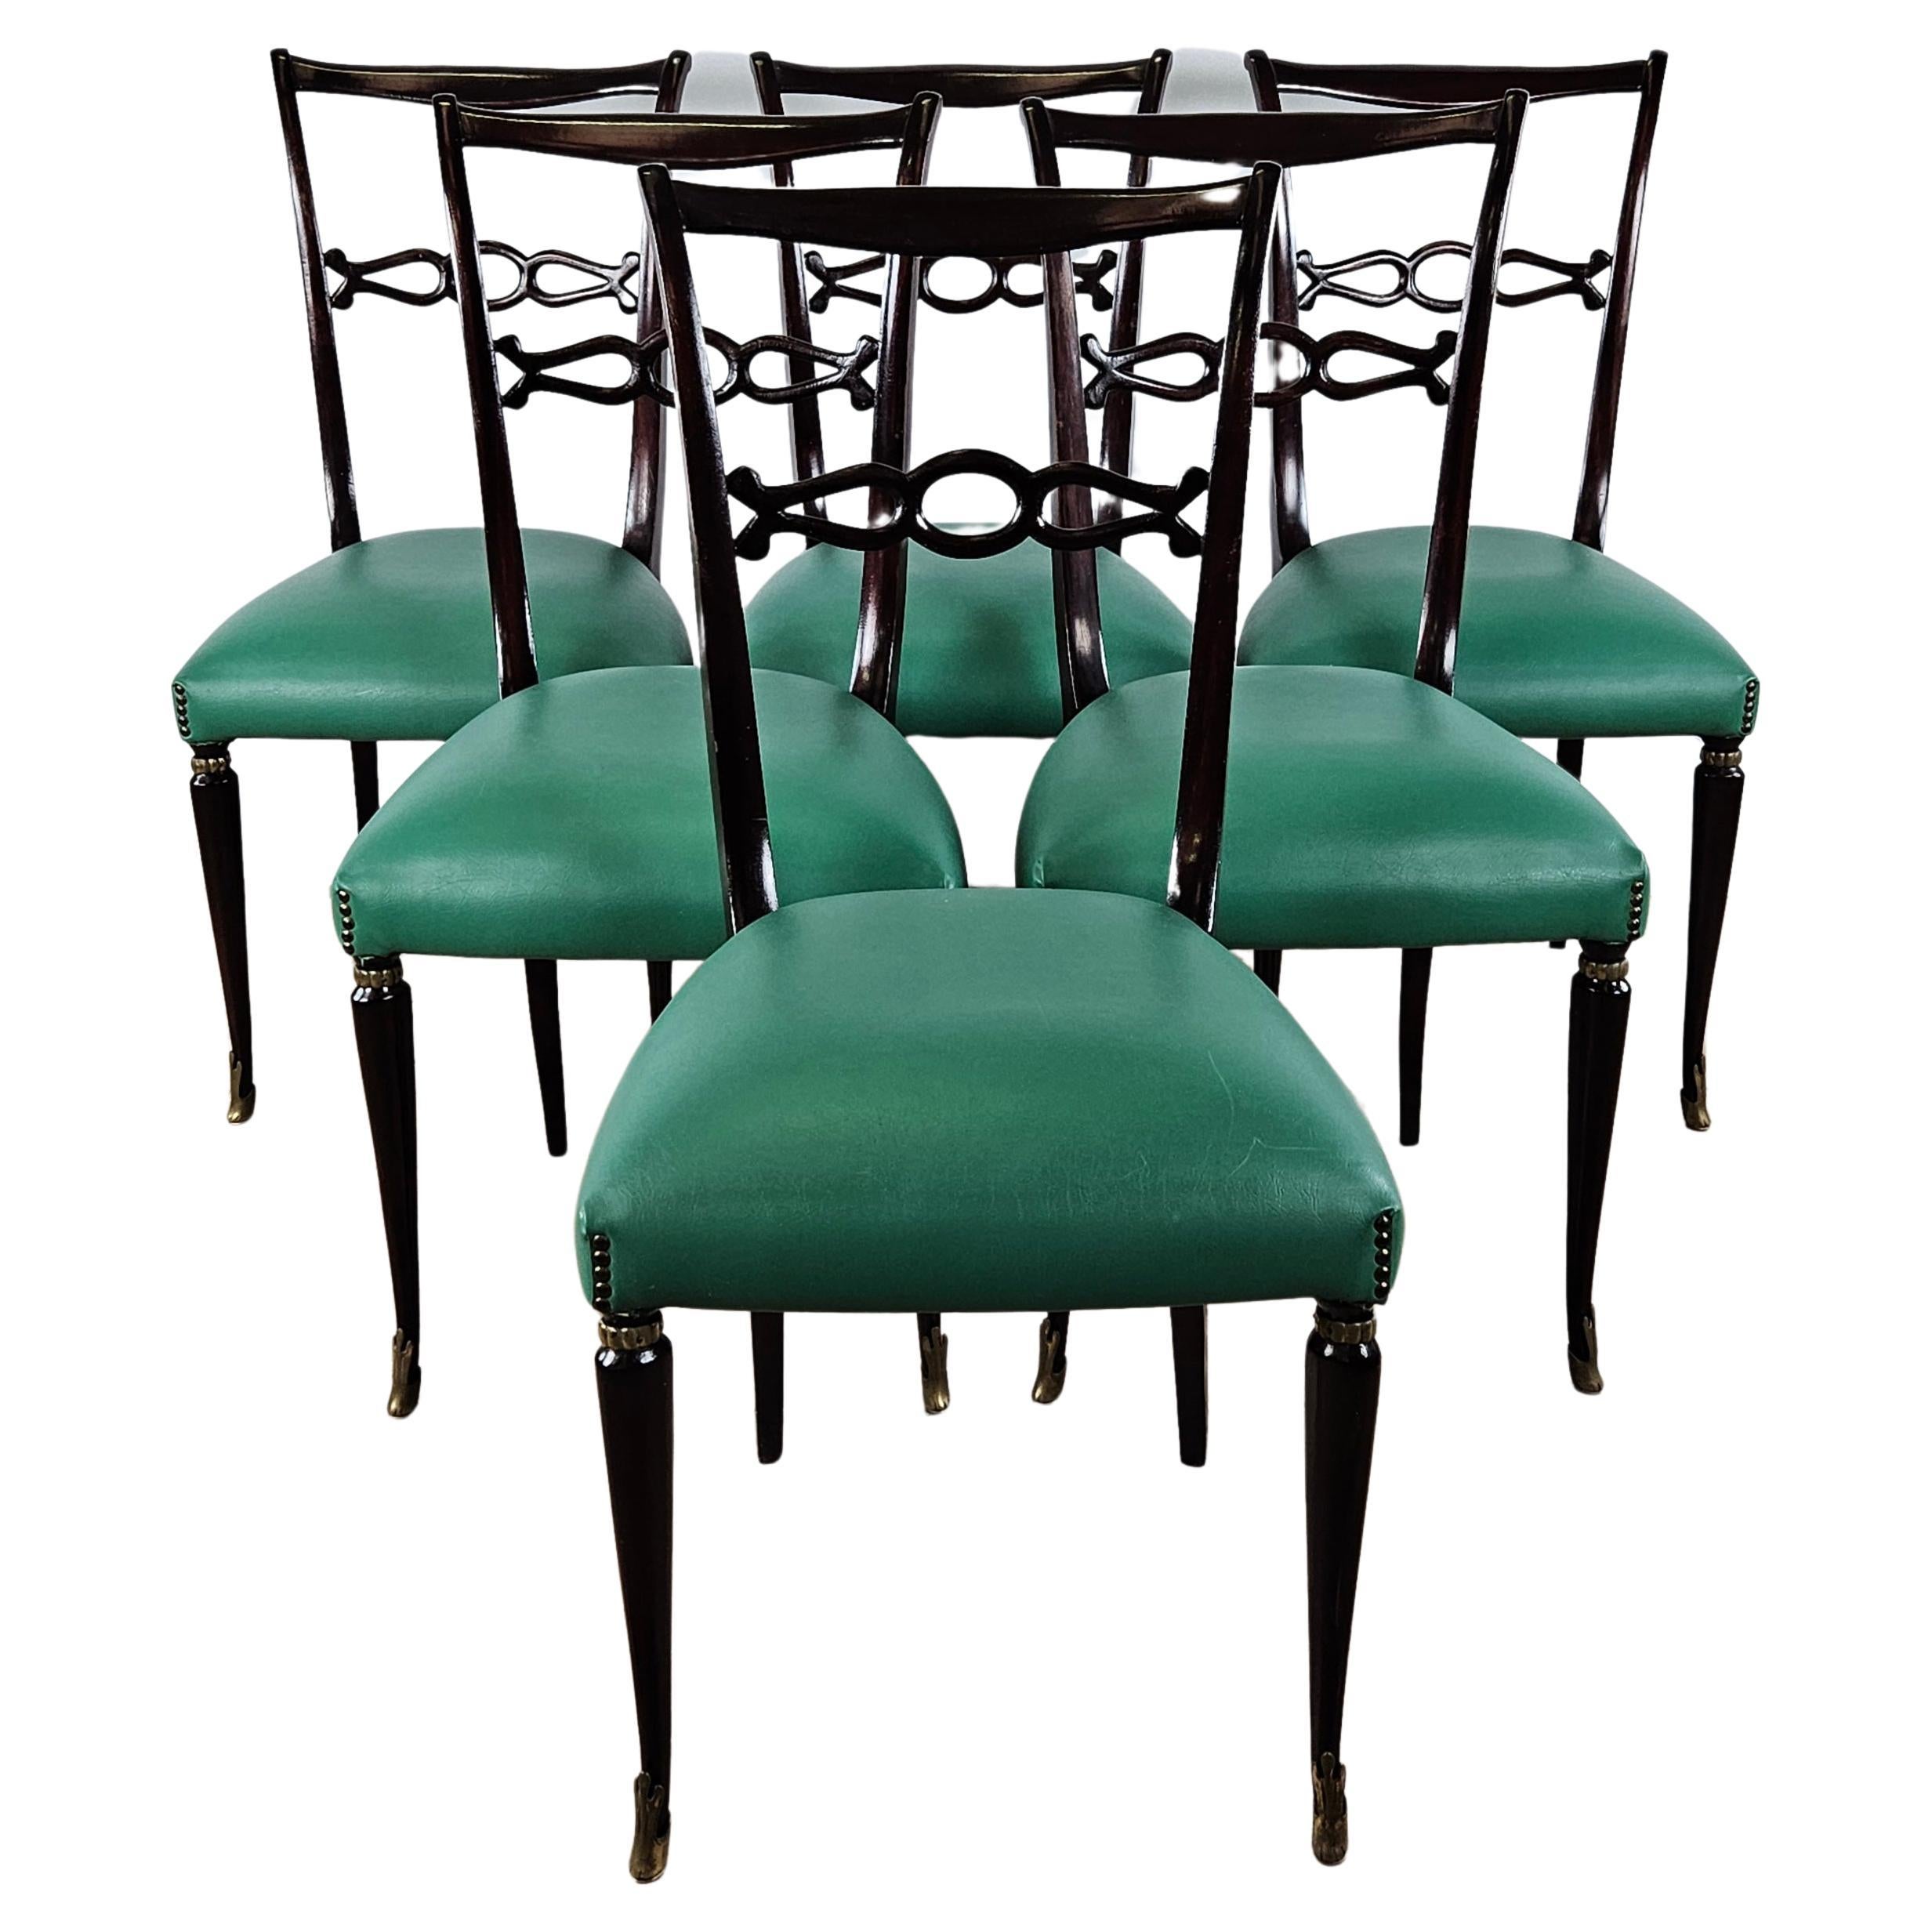 Satz von sechs Esszimmerstühlen aus den 1950er Jahren im Stil von Paolo Buffa